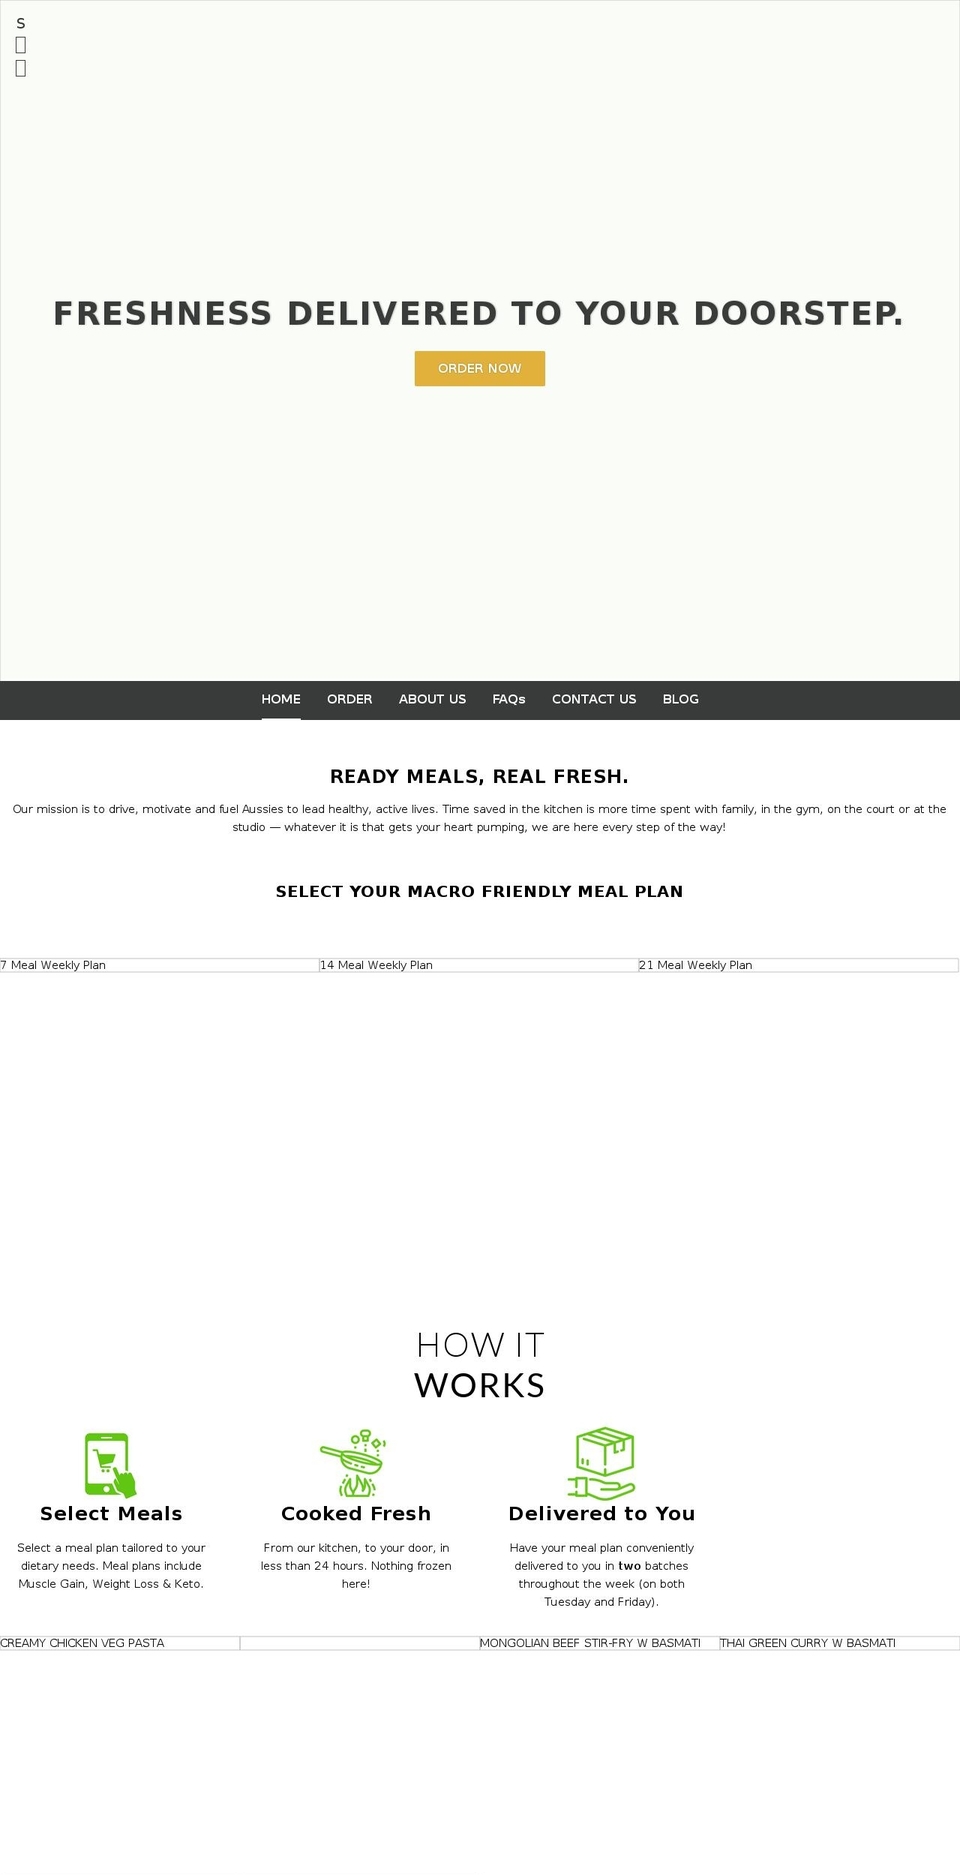 December Shopify theme site example mrmeals.com.au